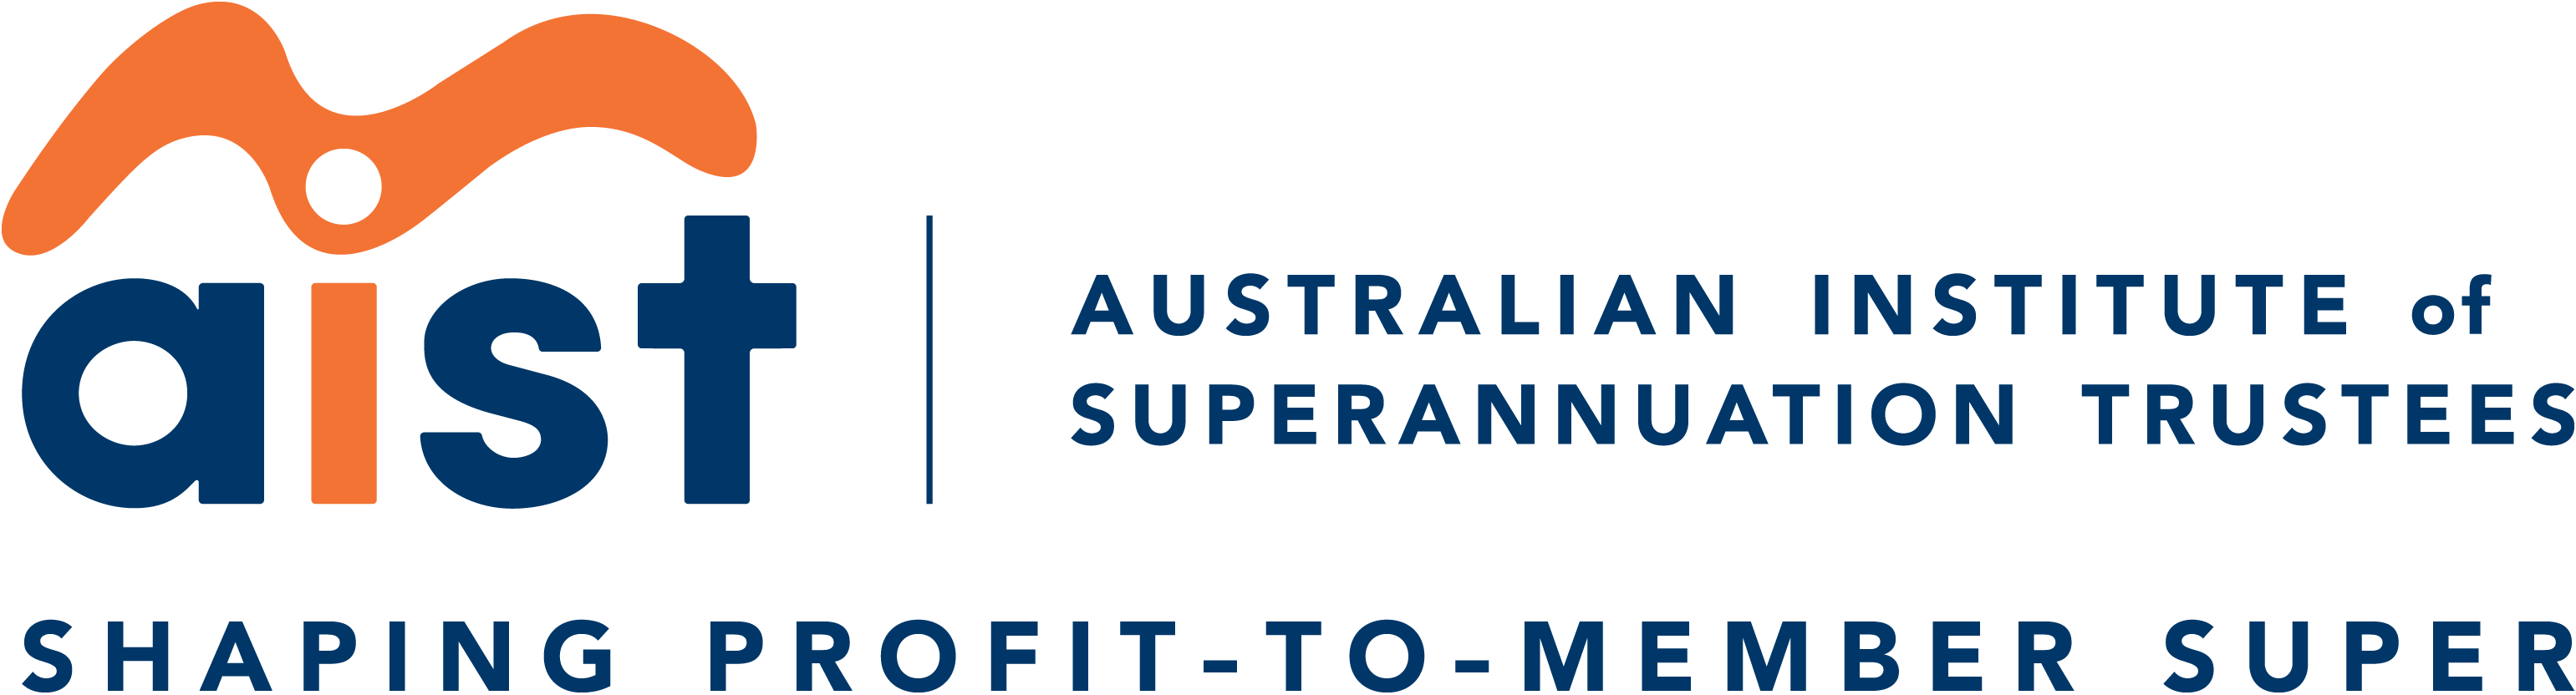 Australian Institute of Superannuation Trustees